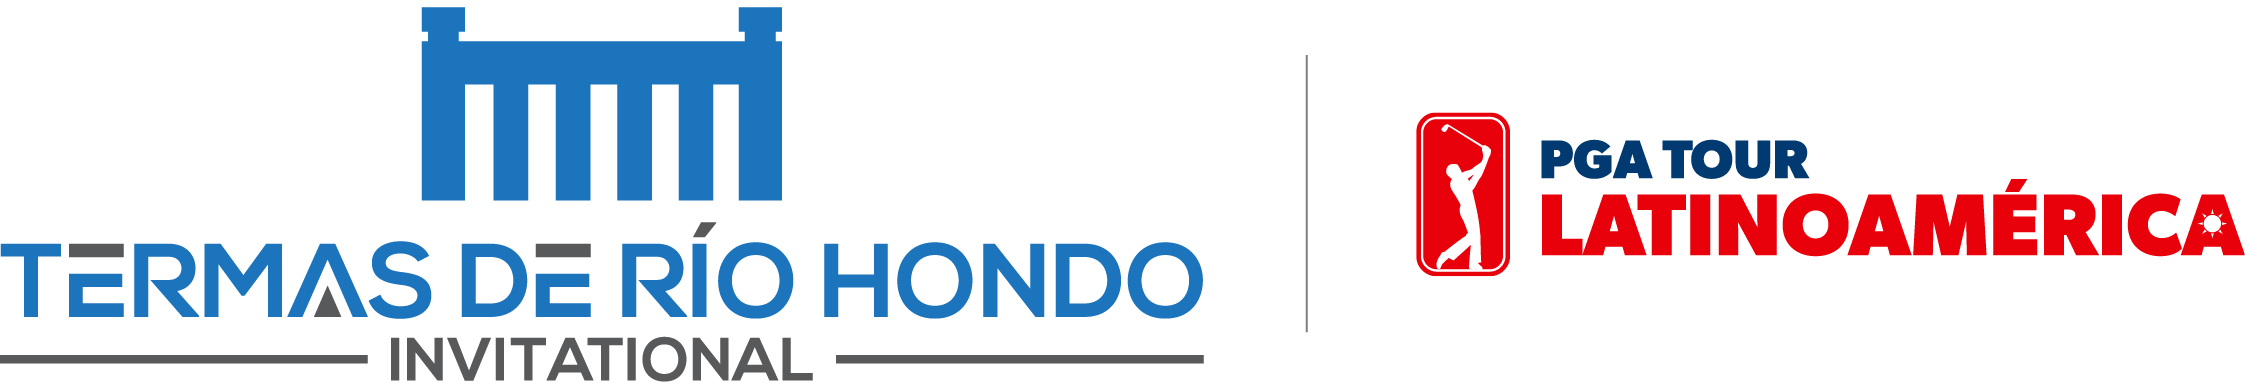 Termas de Rio Hondo Invitational